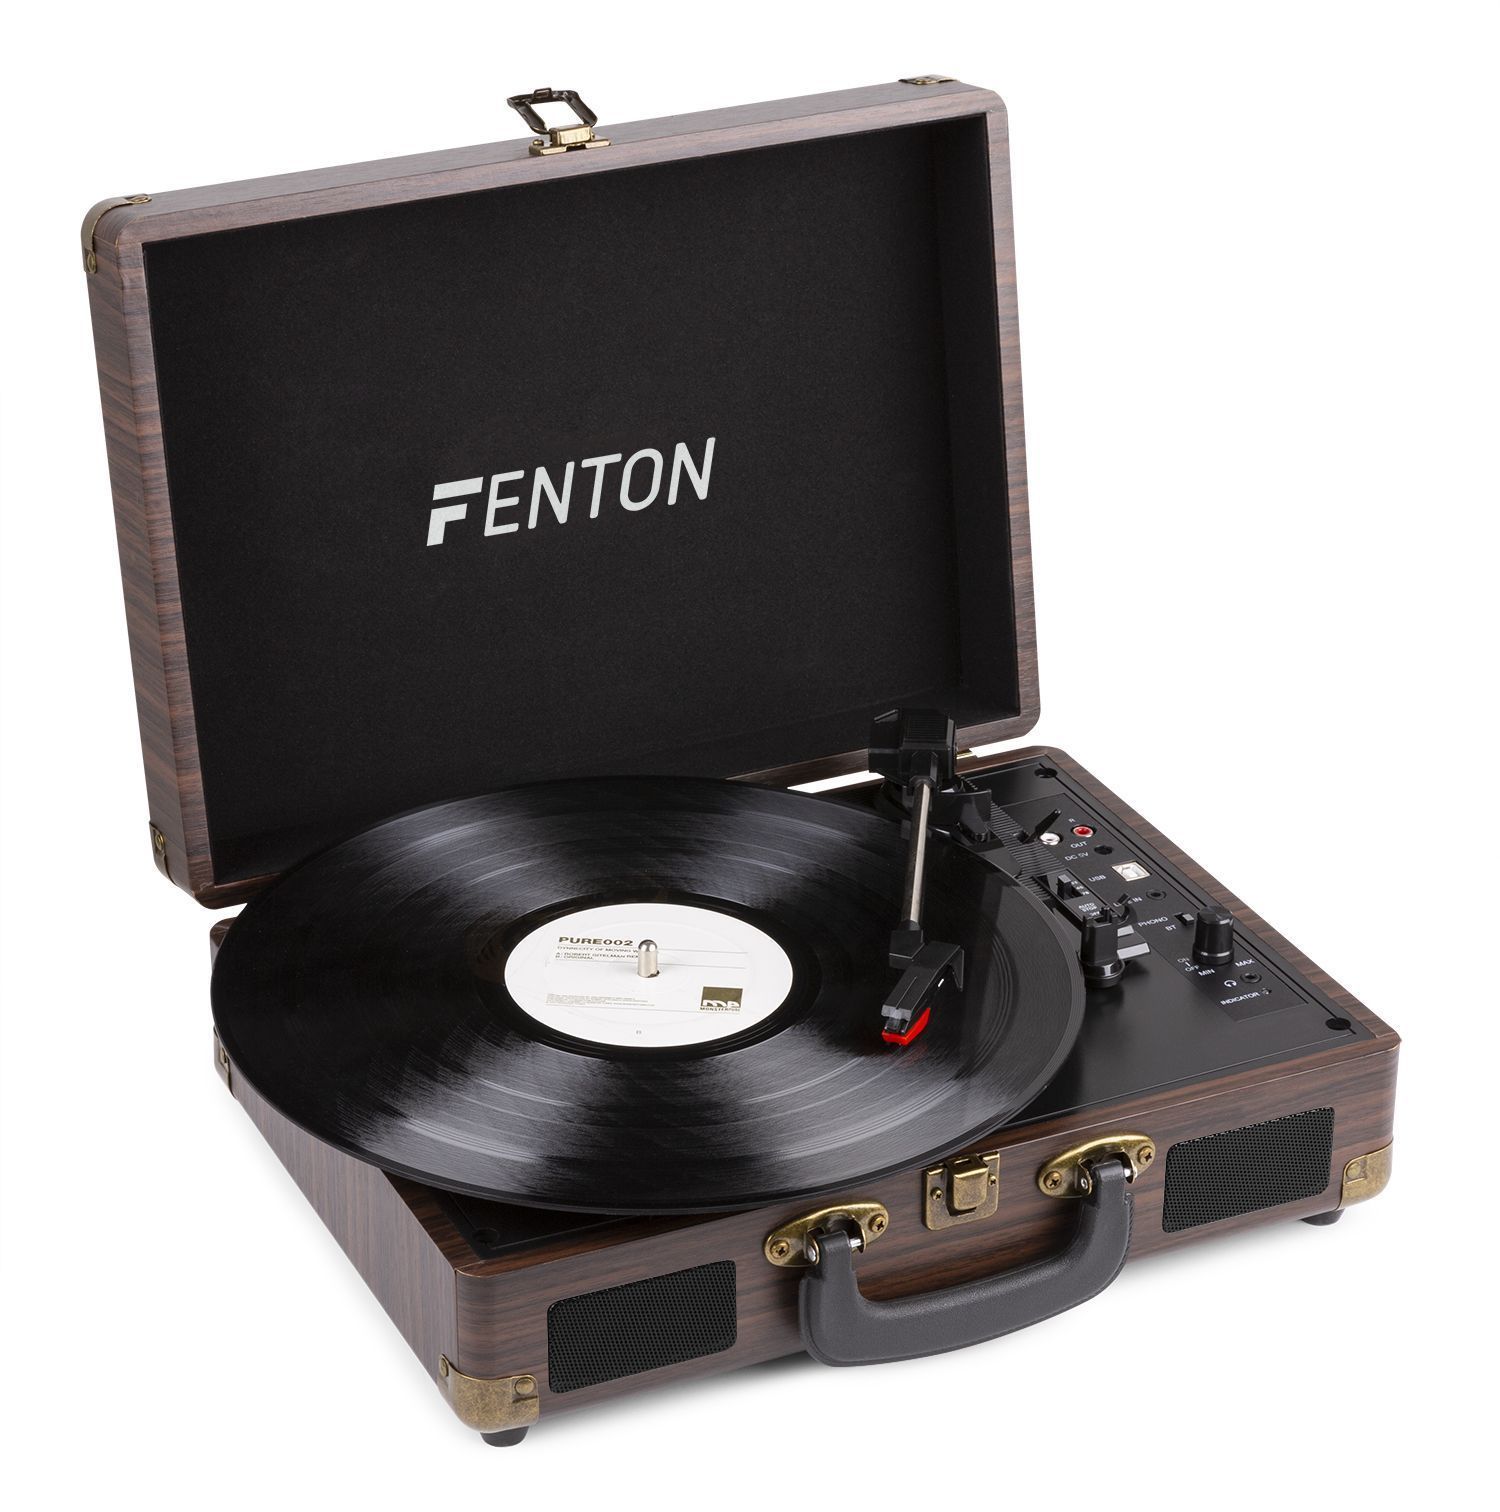 Fenton RP115B retro skivspelare med Bluetooth och USB - Trä design